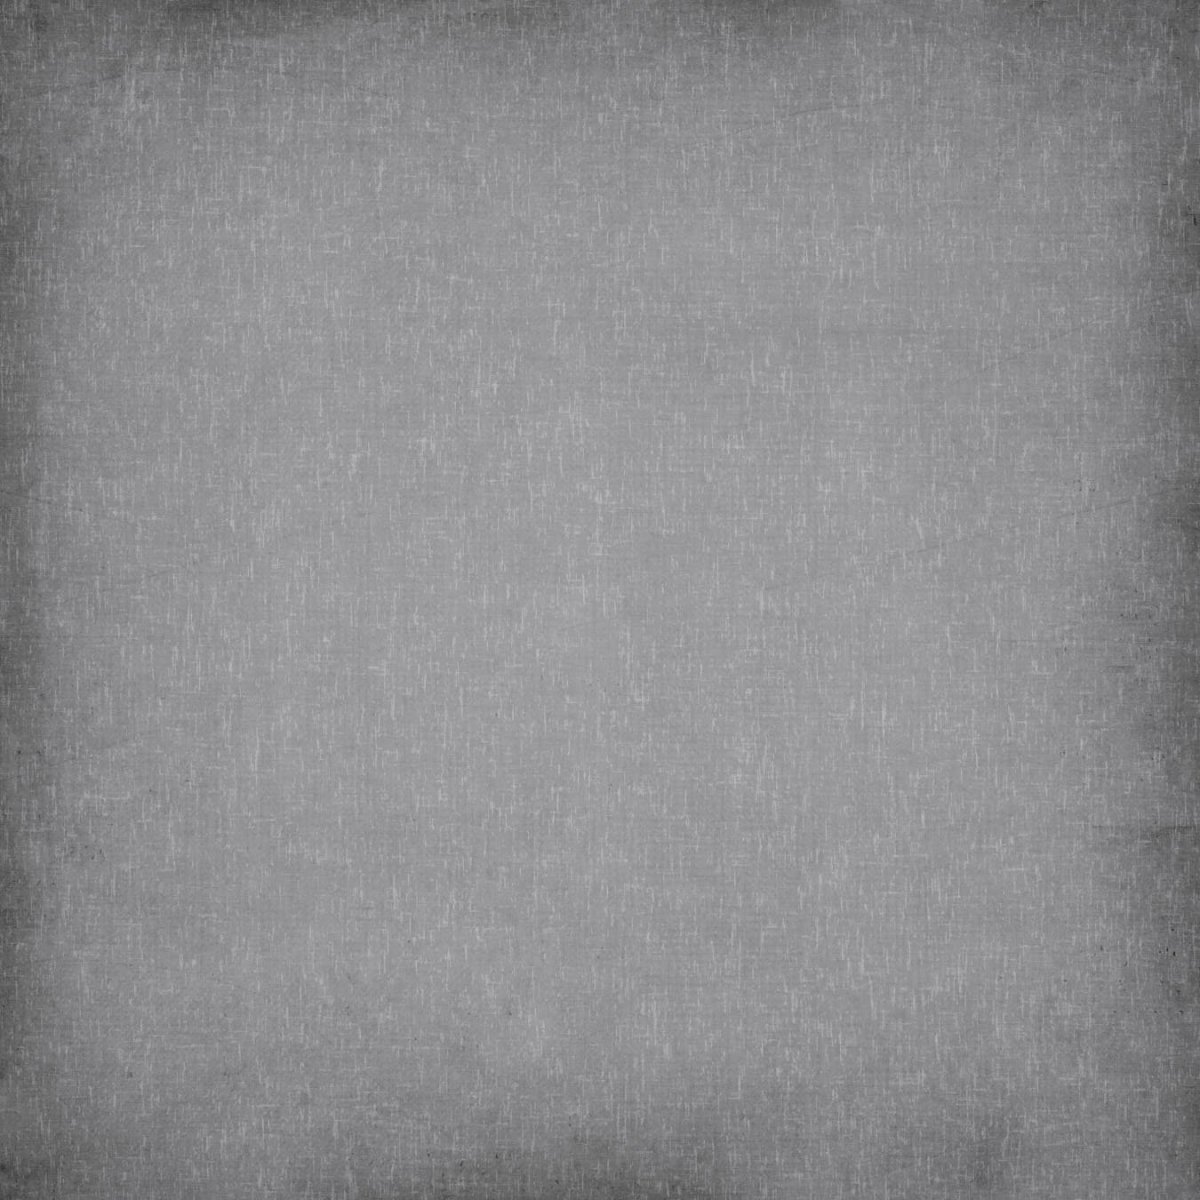 Прямоугольный серый фон - 84 фото